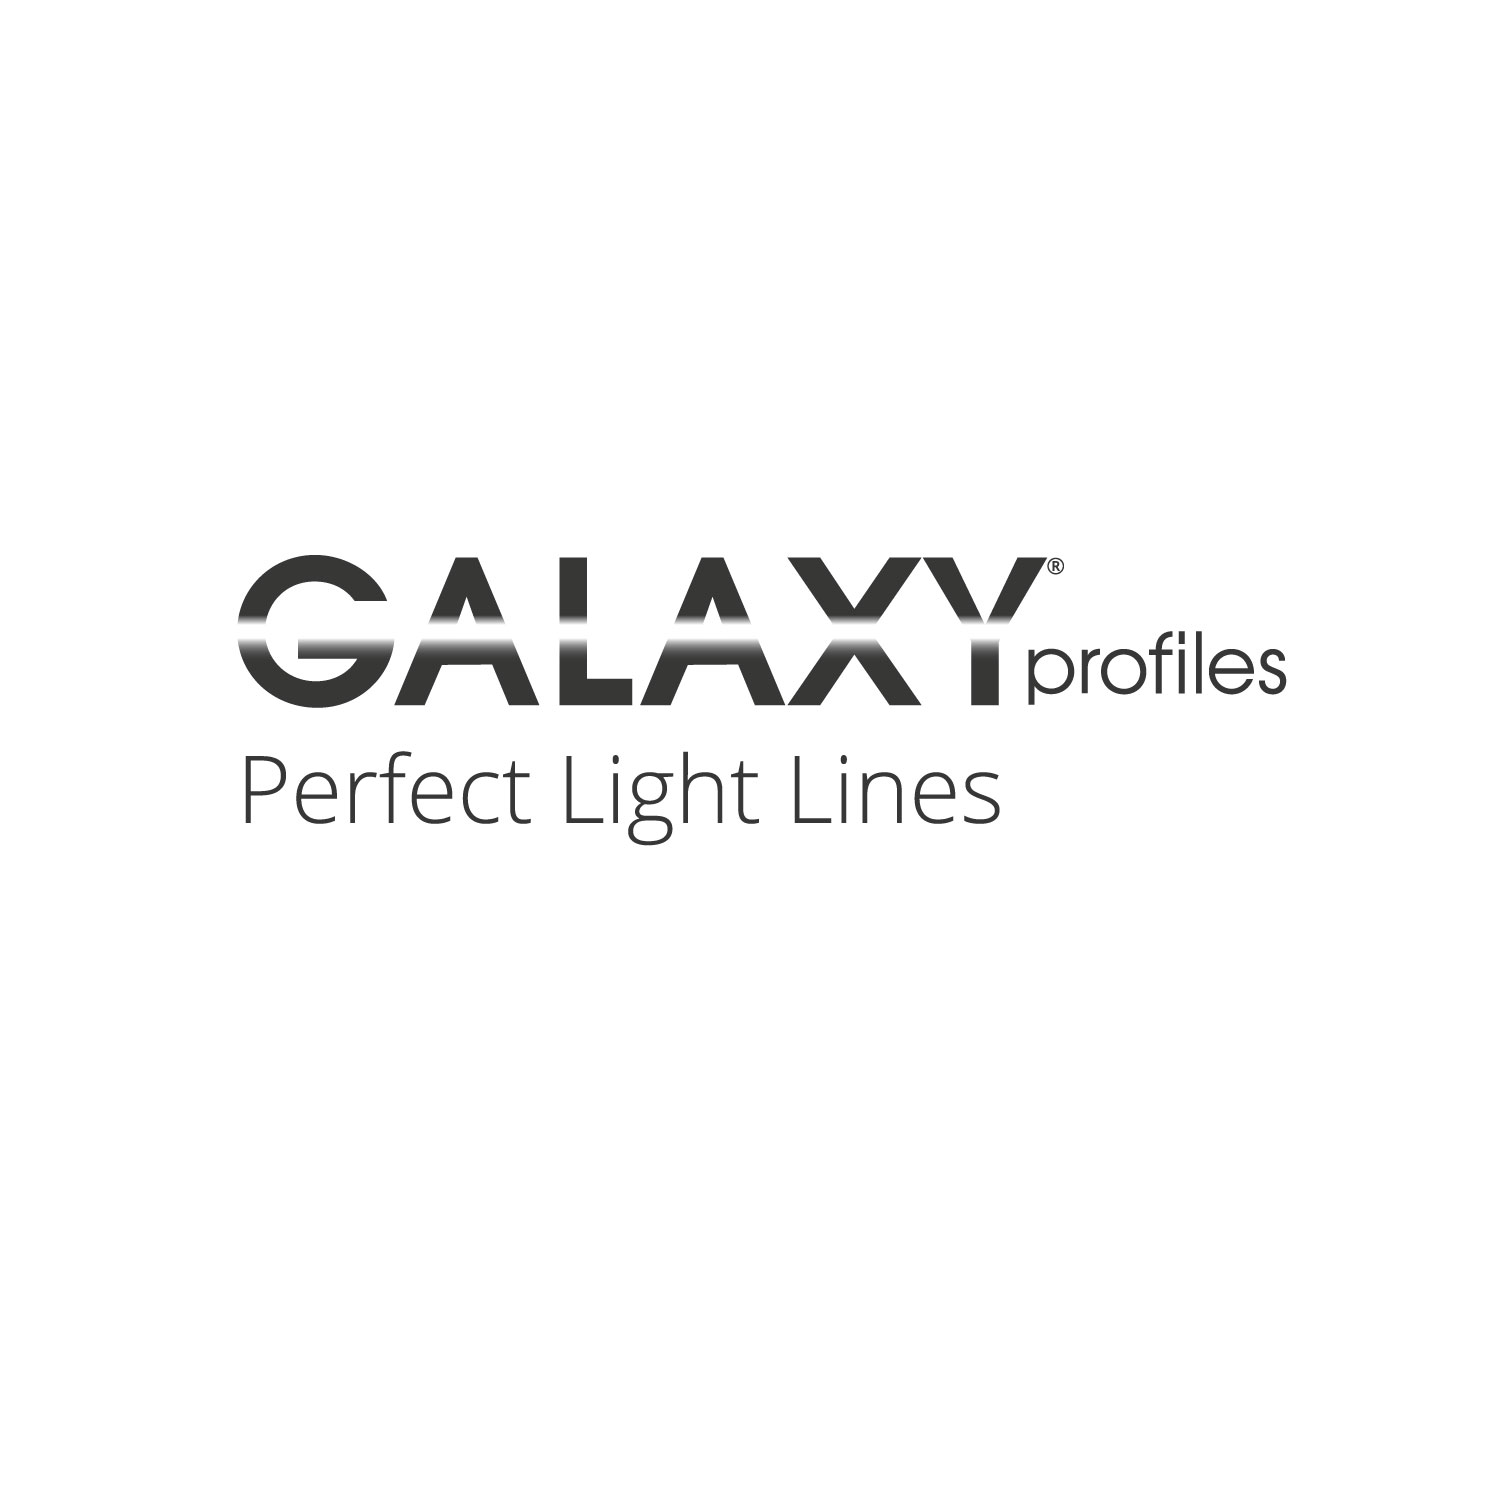 GALAXY® profiles - Katalog 2022/2023 - Englisch - Deutsch